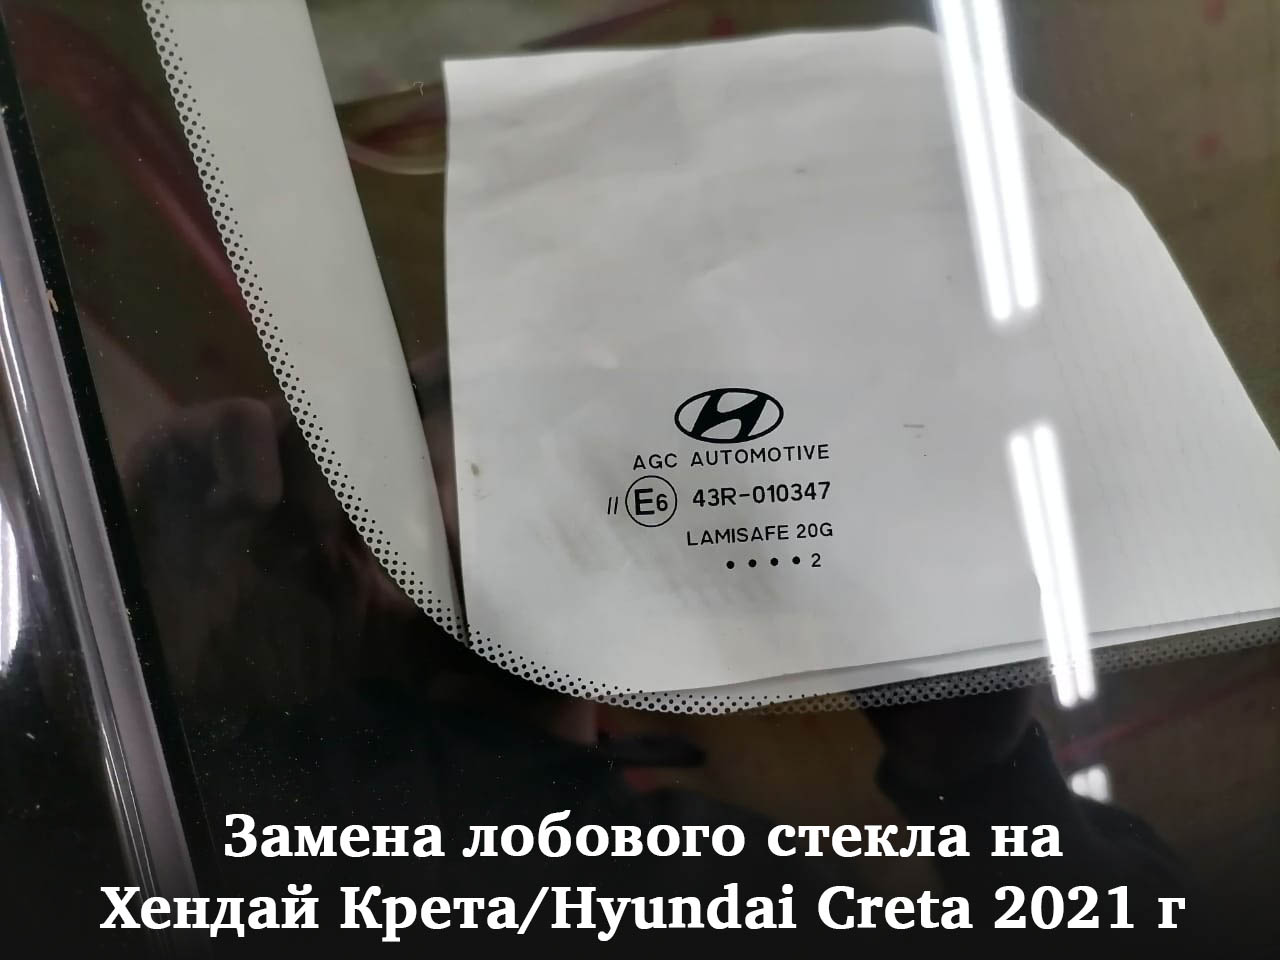 Замена лобового стекла на Хендай Крета/Hyundai Creta 2021 г